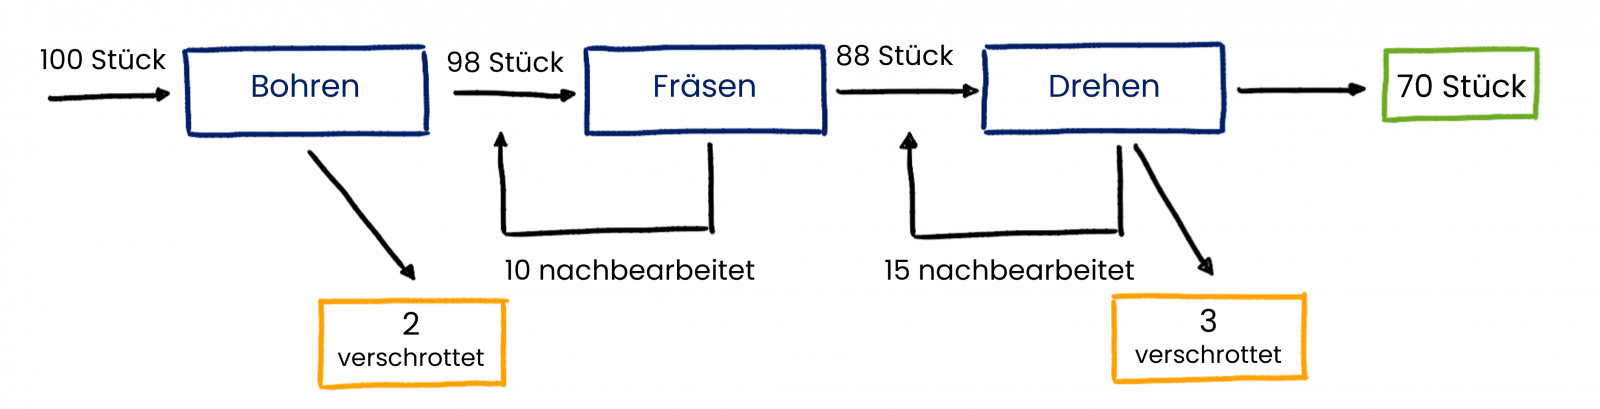 Ein Beispiel für die Berechnung des FPY, First Past Yield, wenn mehrere Prozesse in einer Sequenz sind.